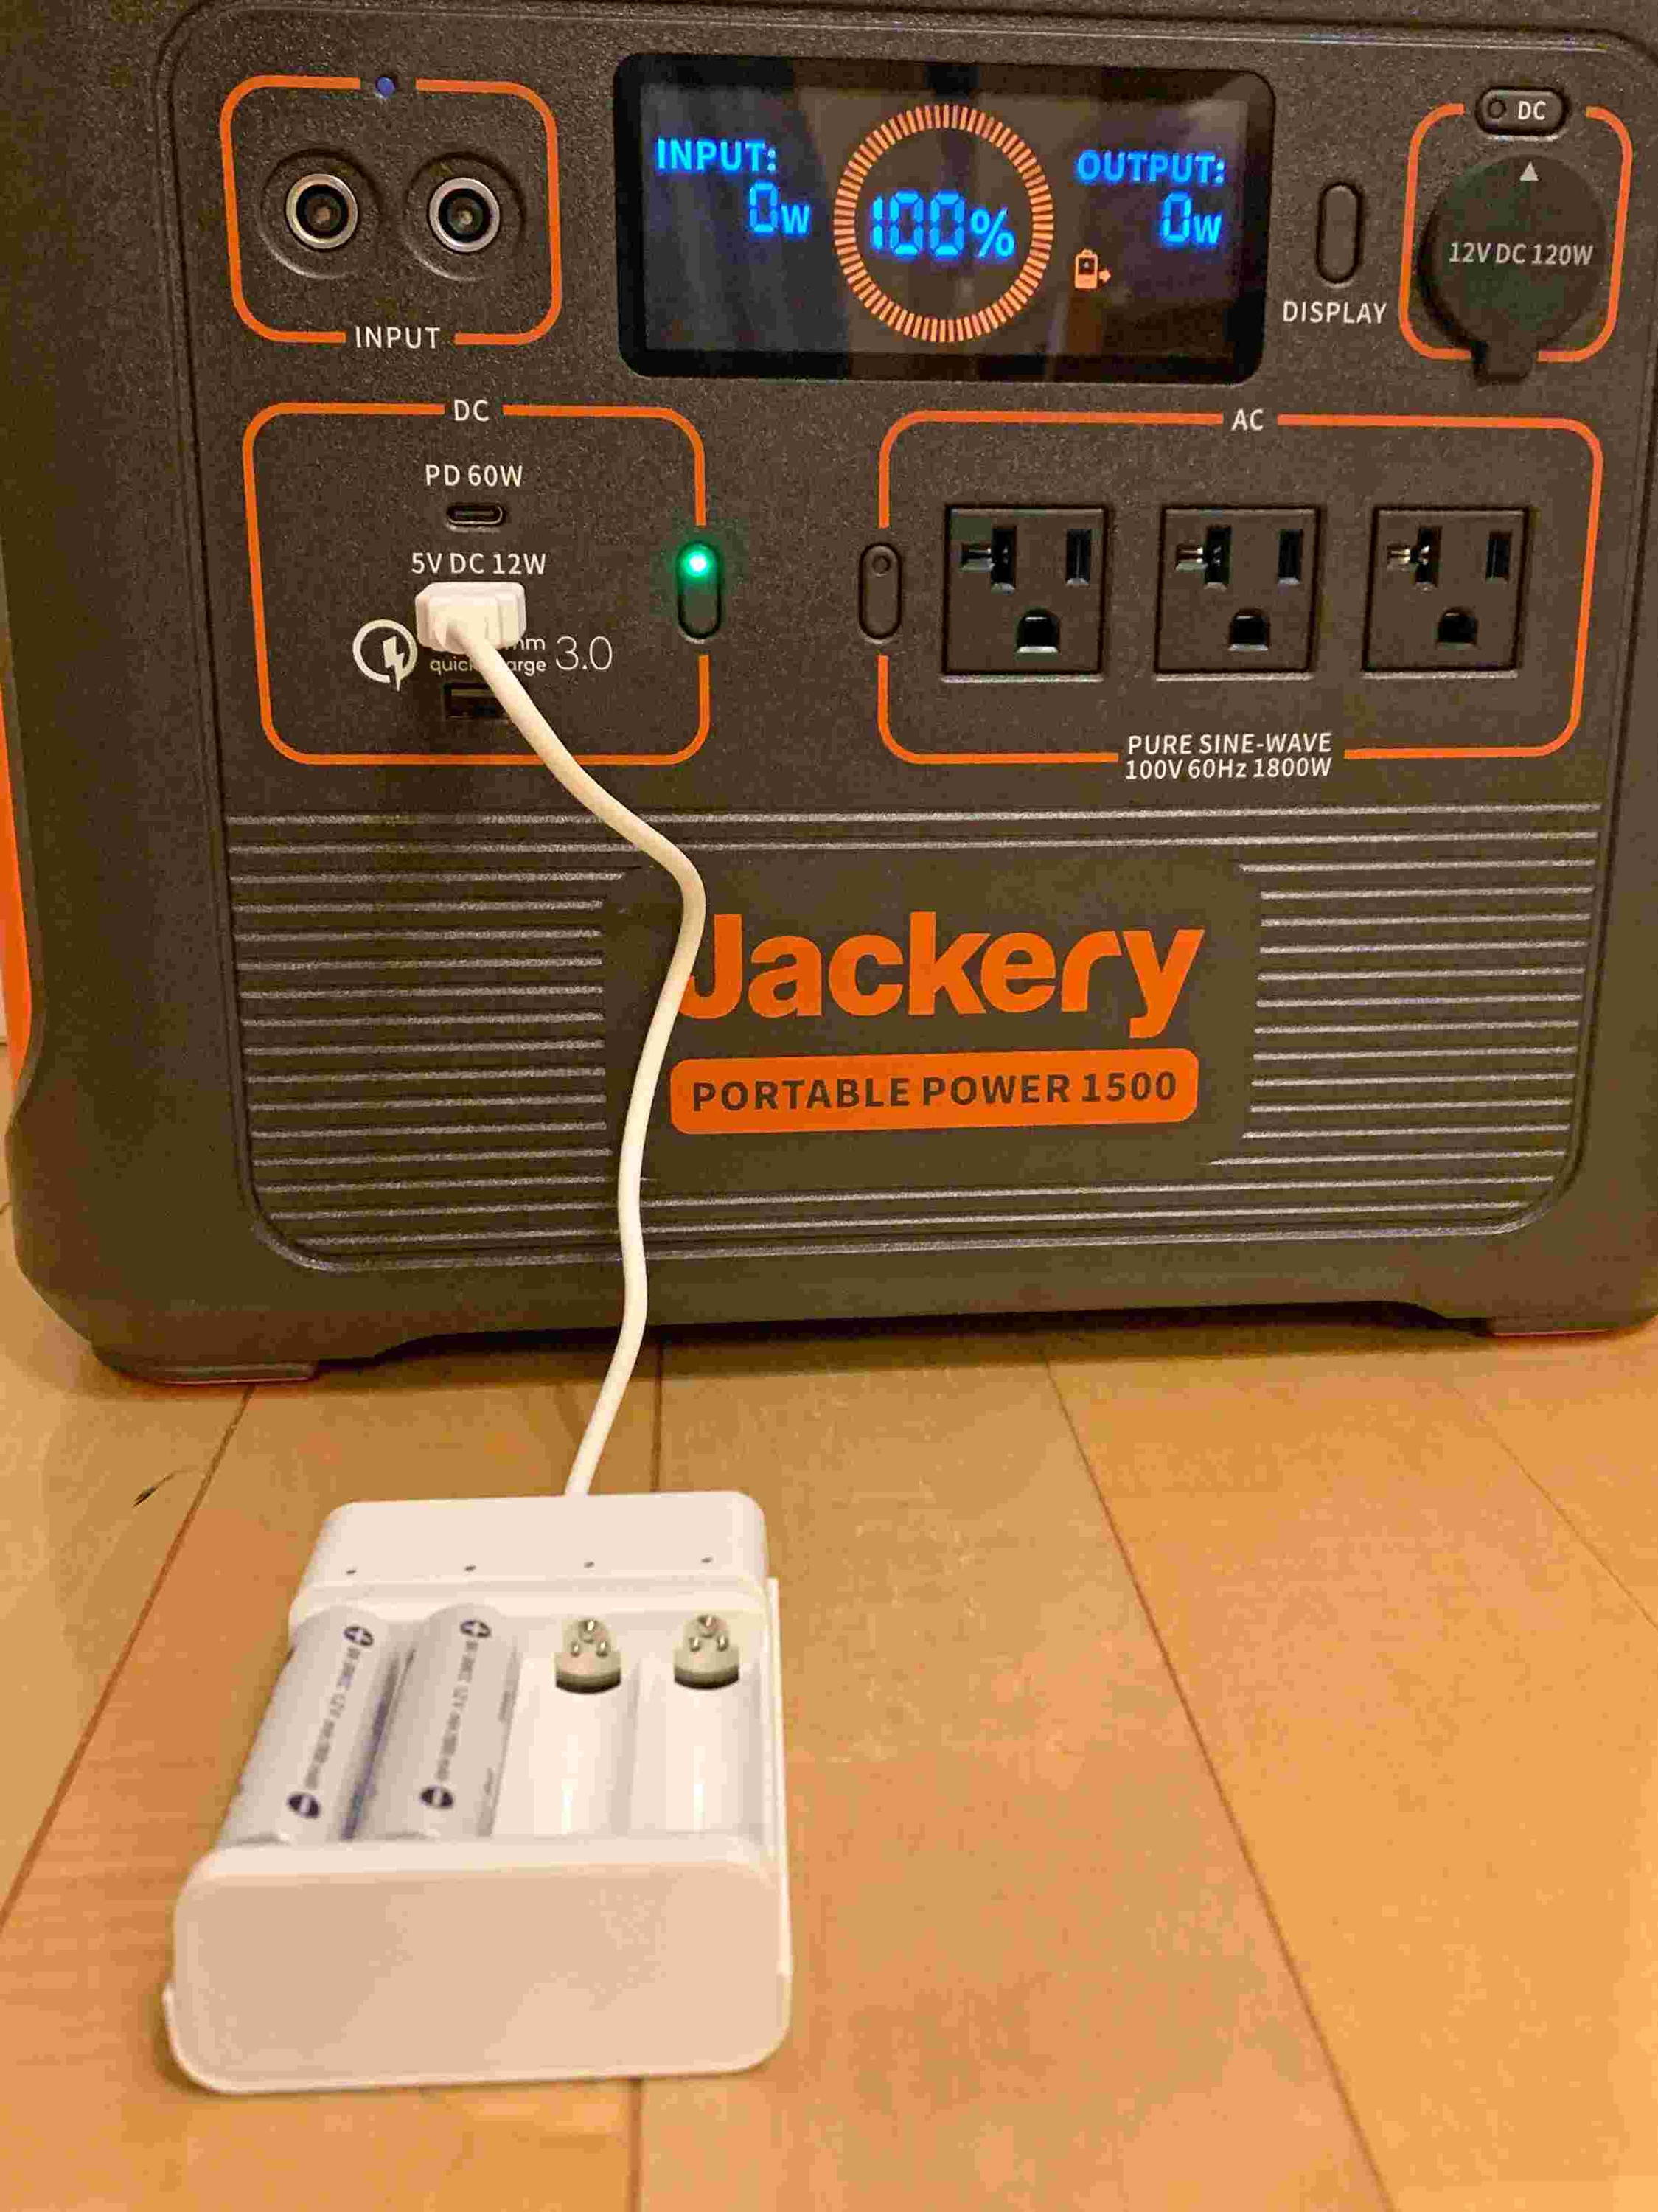 単3形ニッケル水素充電池を「Jackery ポータブル電源 1500」で充電。